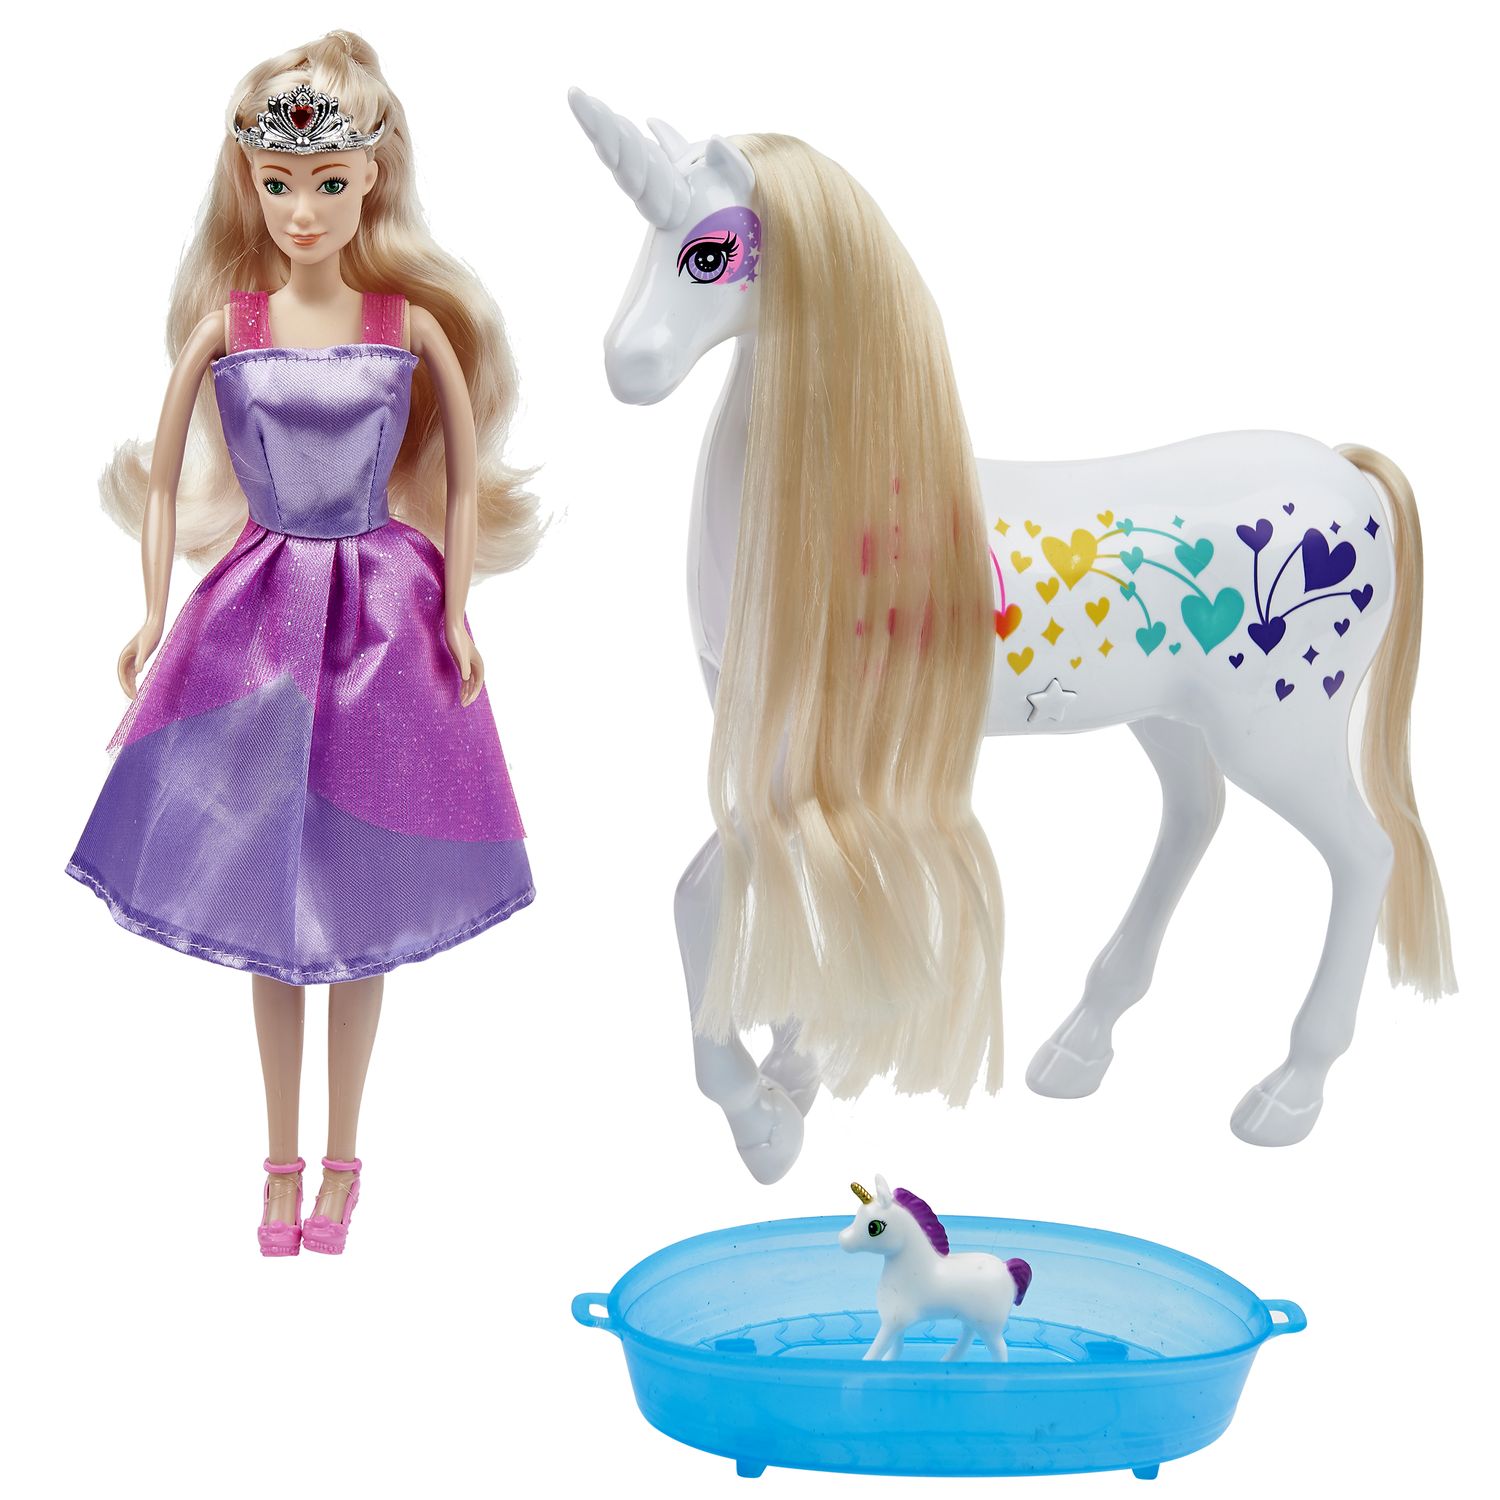 ② Barbie Dreamtopia Cheval Lumières Magiques Licorne poupée — Jouets